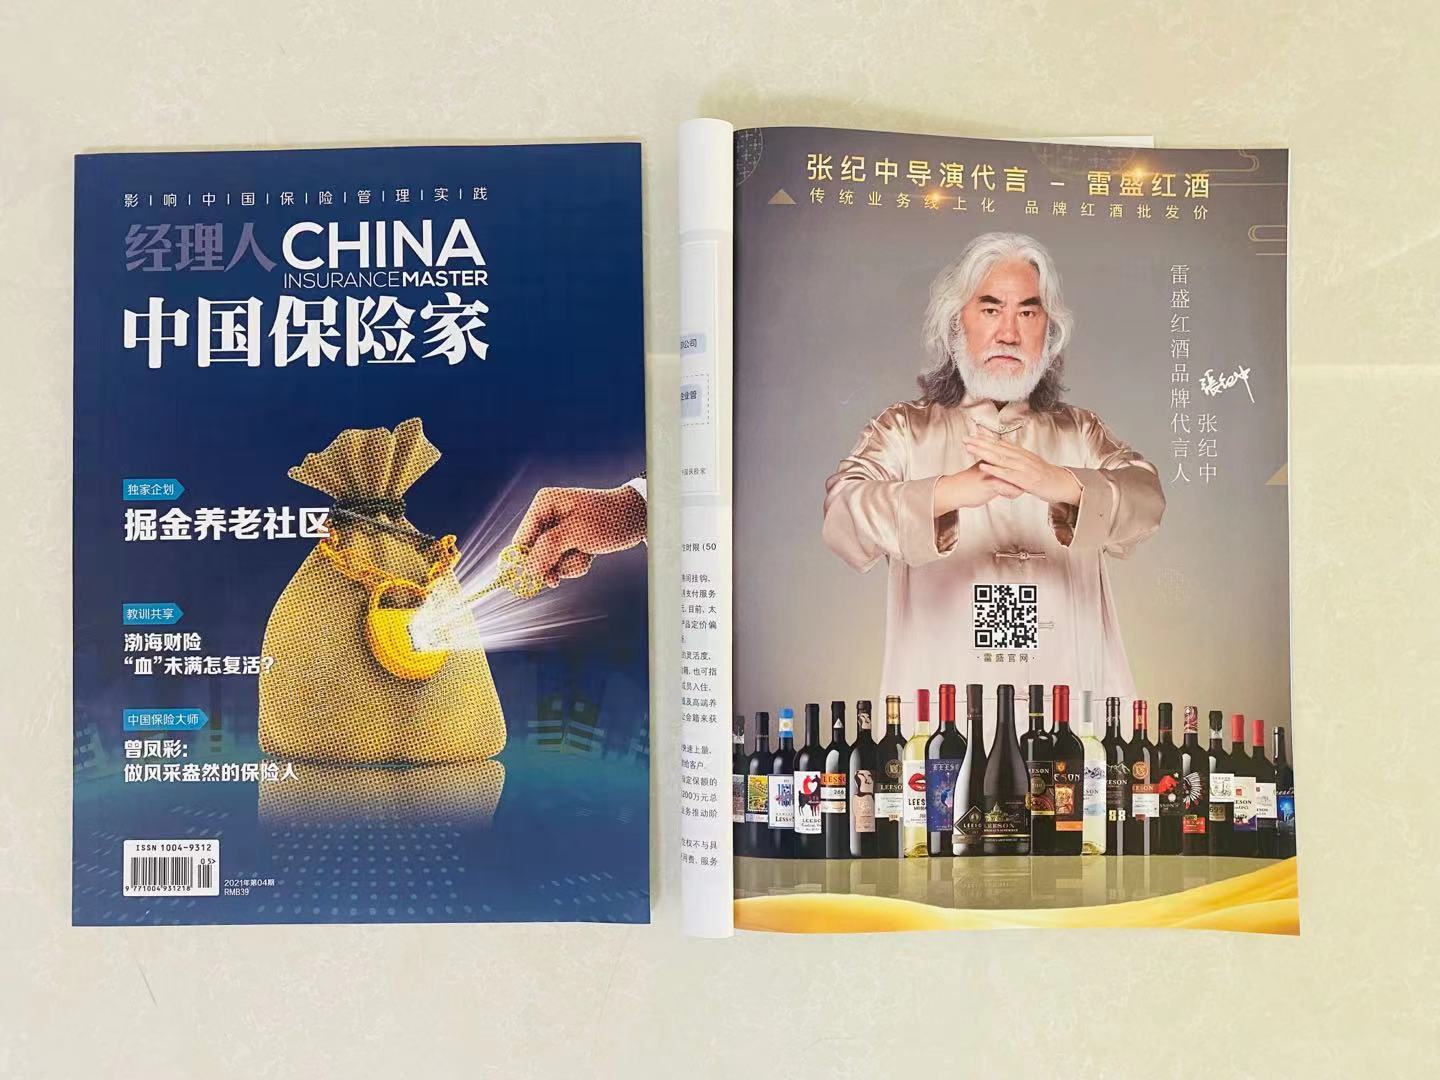 《中国保险家》杂志刊登雷盛红酒广告